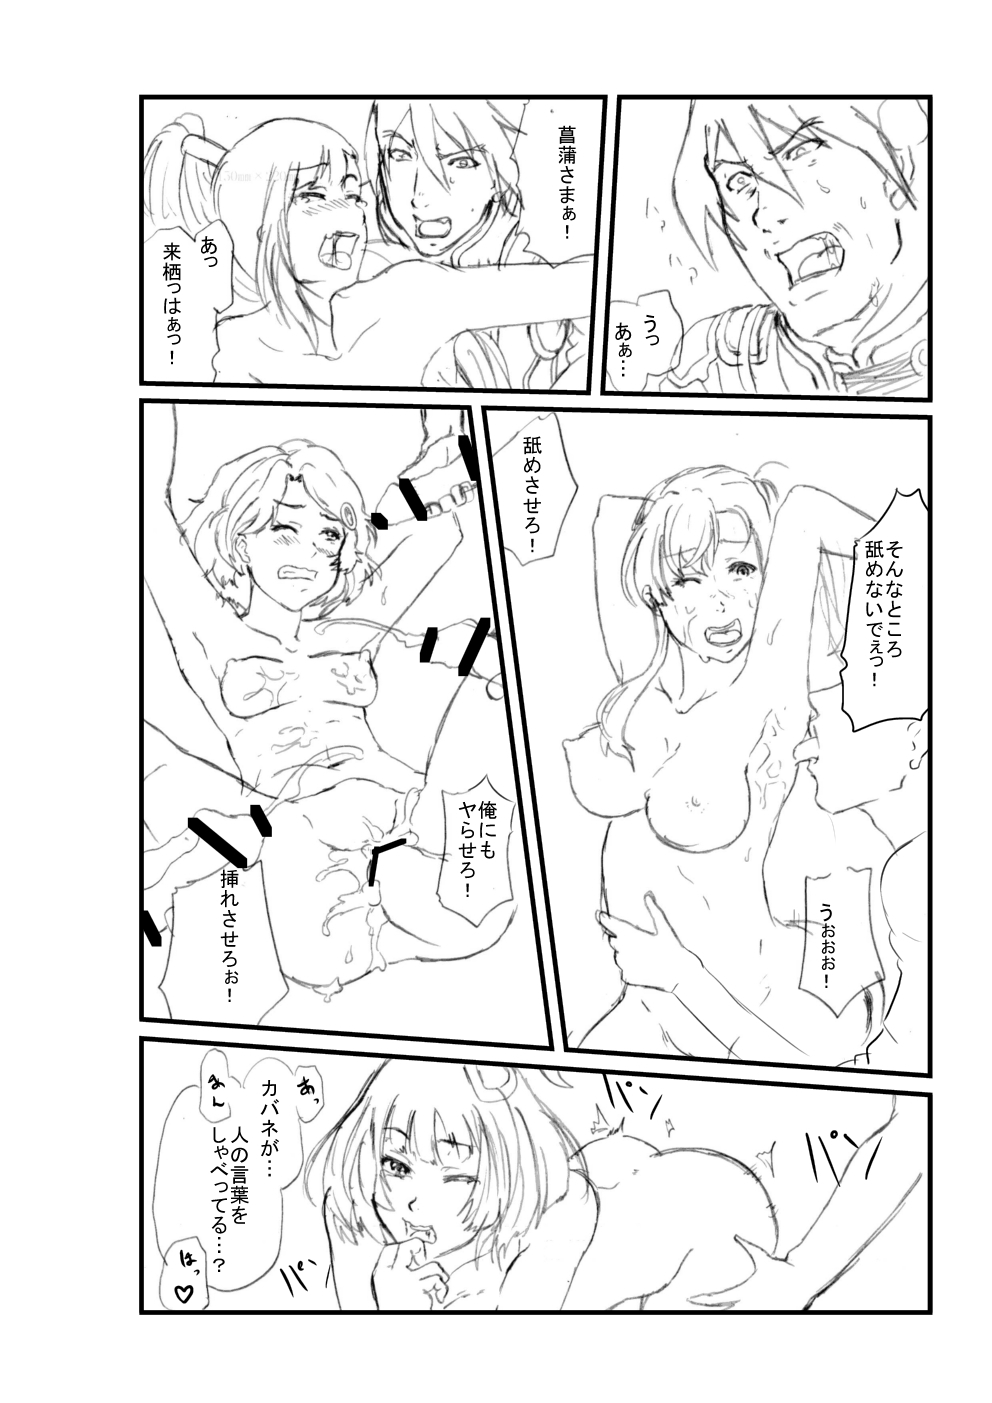 [Sezoku] Koutetsujou no Kabaneri (Koutetsujou no Kabaneri) page 8 full